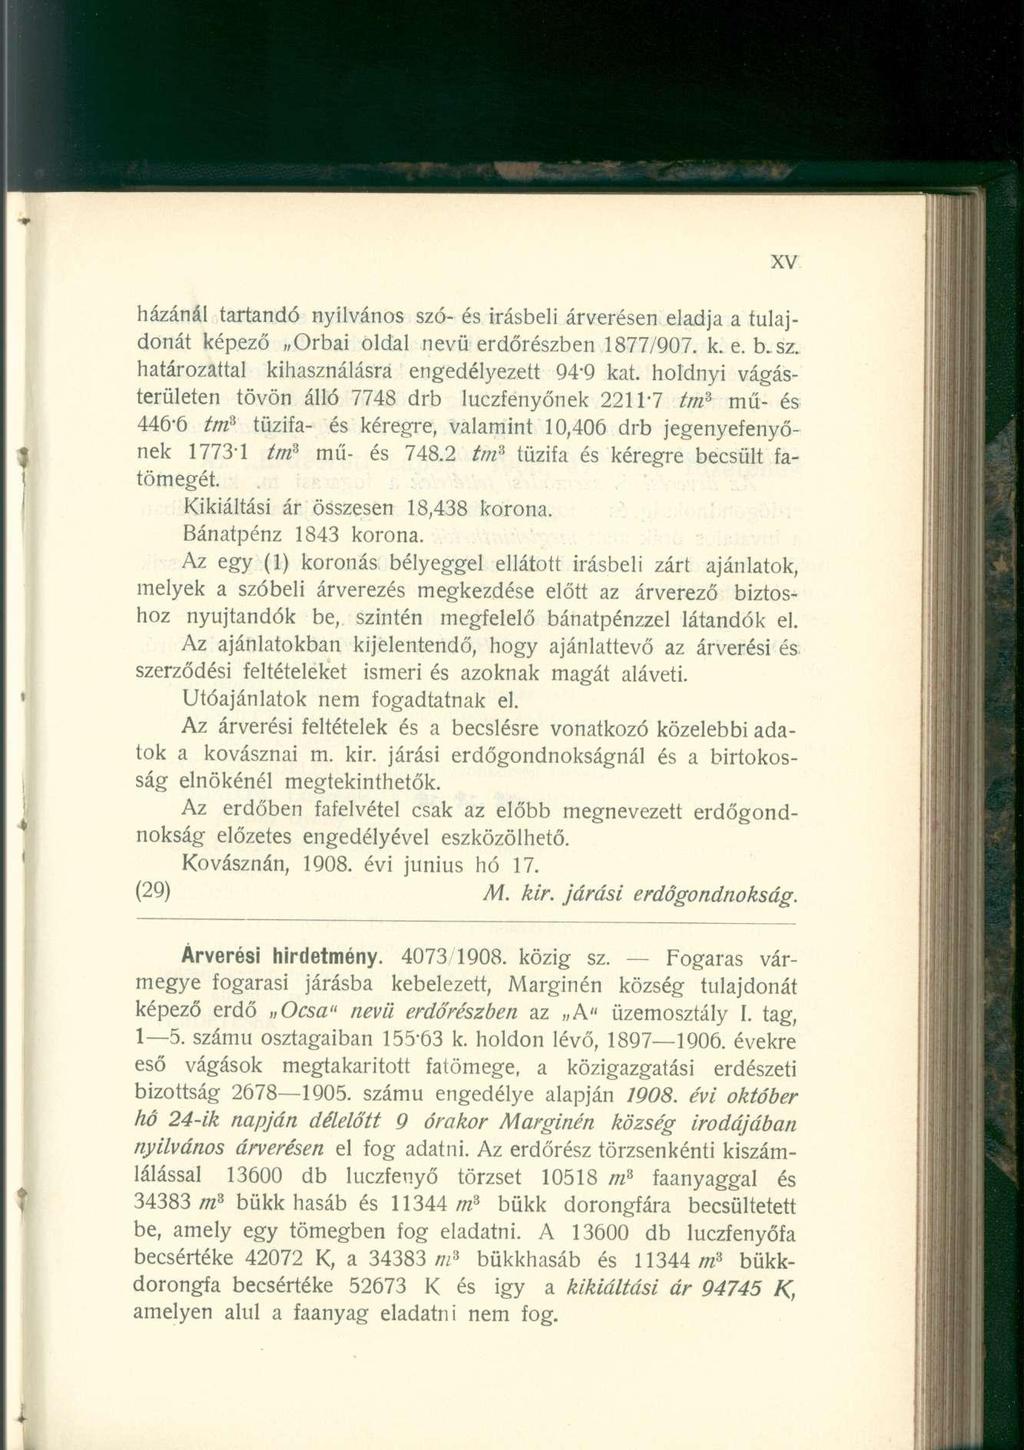 házánál tartandó nyilvános szó- és Írásbeli árverésen eladja a tulajdonát képező Orbai oldal nevü erdőrészben 1877/907. k. e. b. sz. határozattal kihasználásra engedélyezett 94'9 kat.